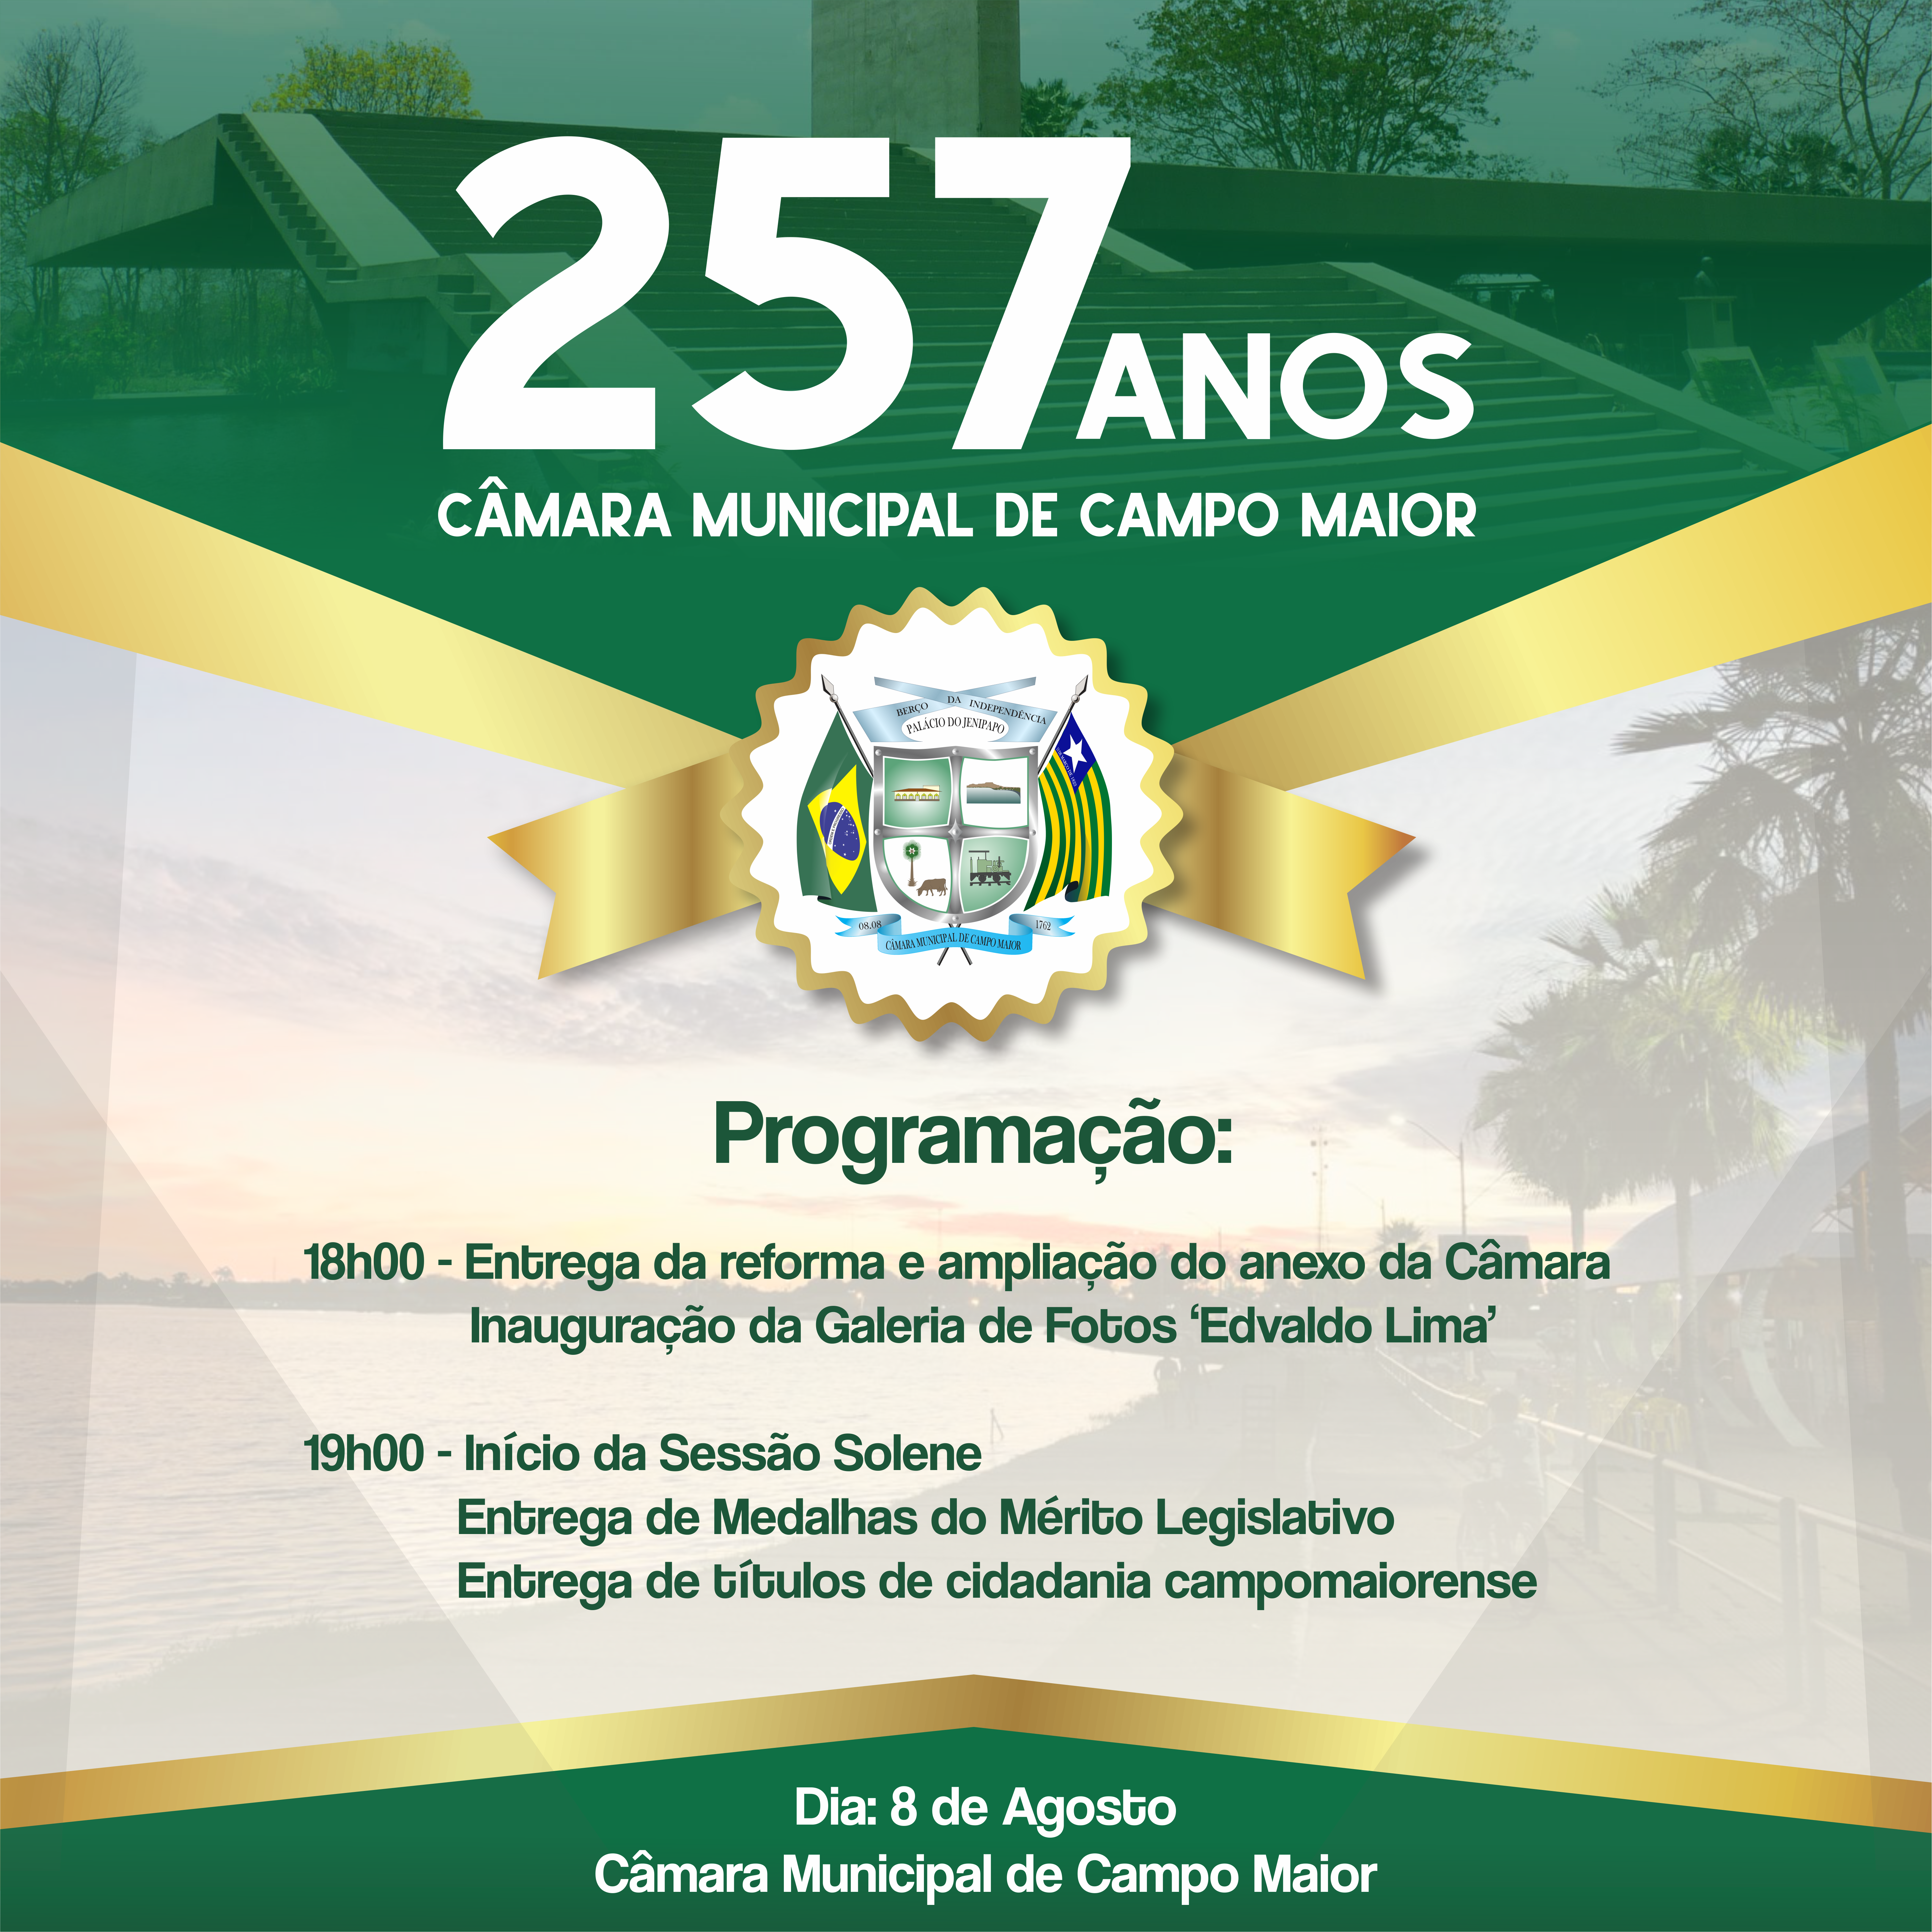 Câmara de Campo Maior completará 257 anos de instalação e divulga programação